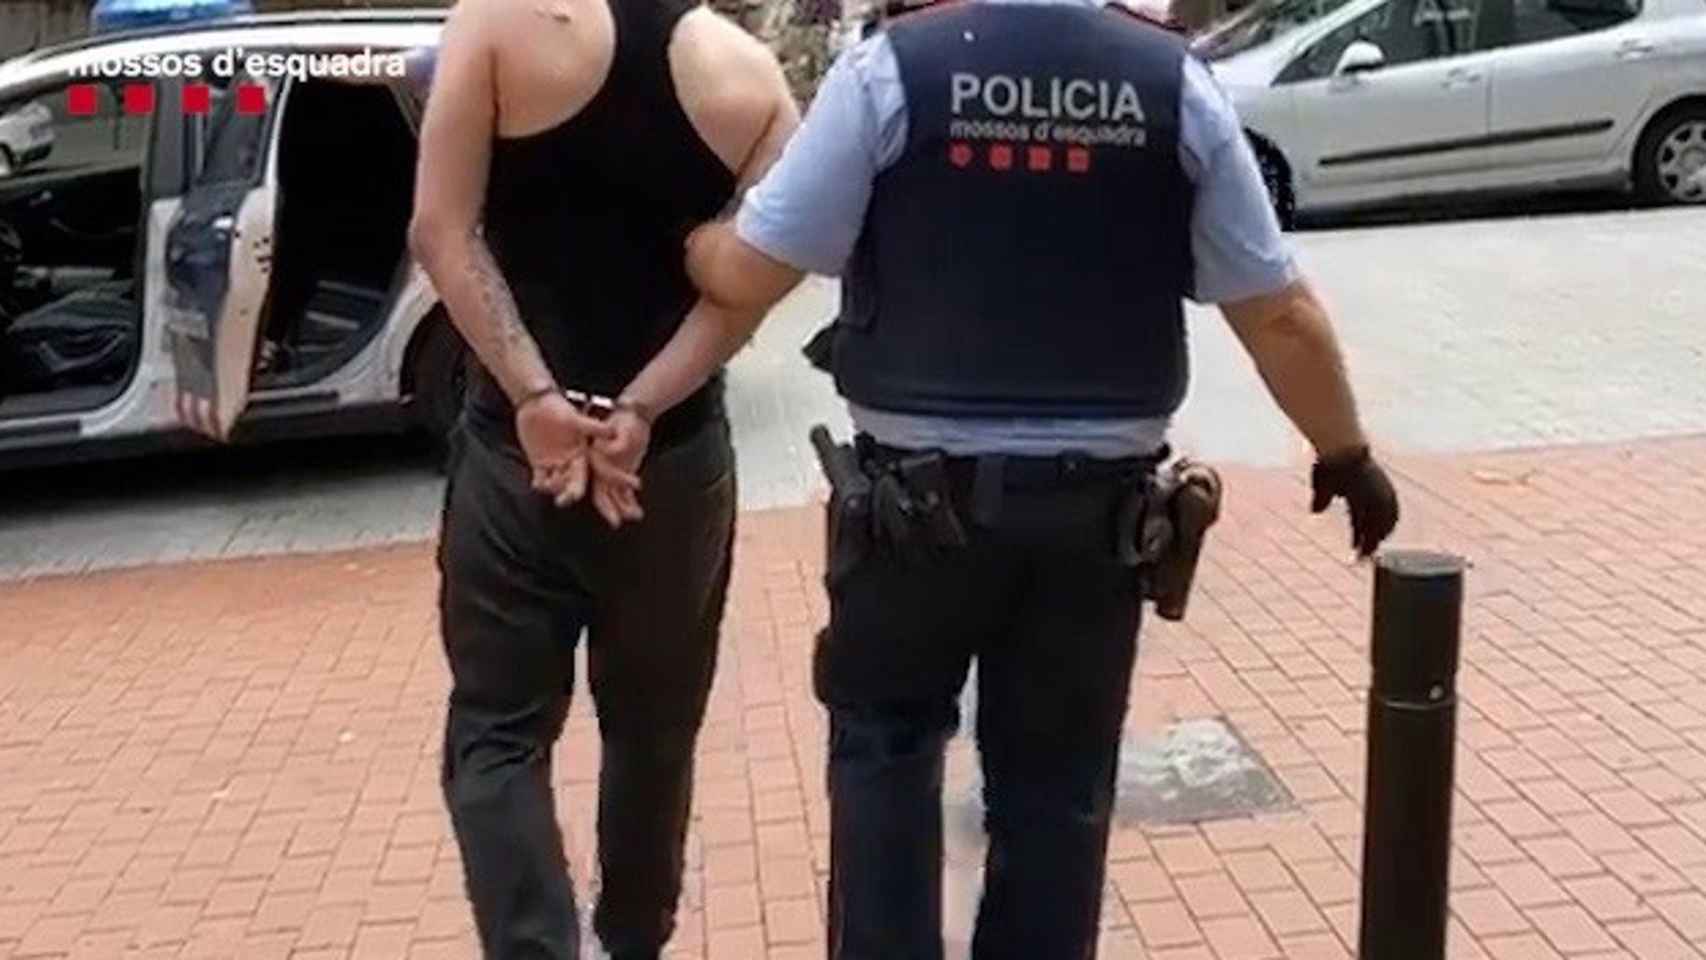 Los Mossos d'Esquadra detienen al autor de cuatro robos en doce días en Barcelona / MOSSOS D'ESQUADRA